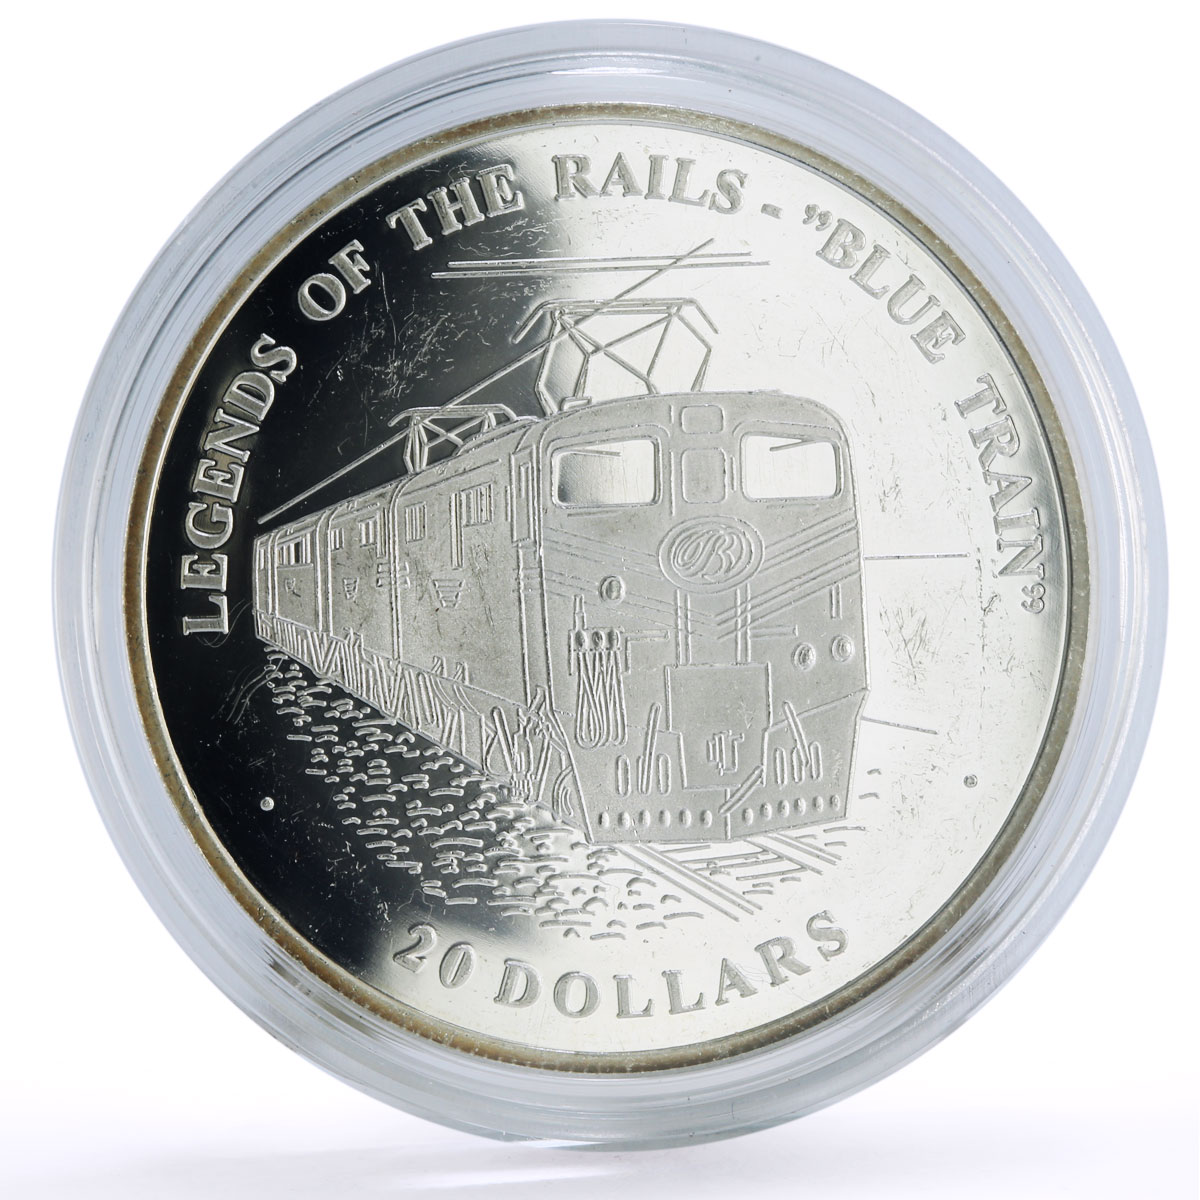 Liberia 20 dollars Railways Railroads Trains Blue Train proof silver coin 2003